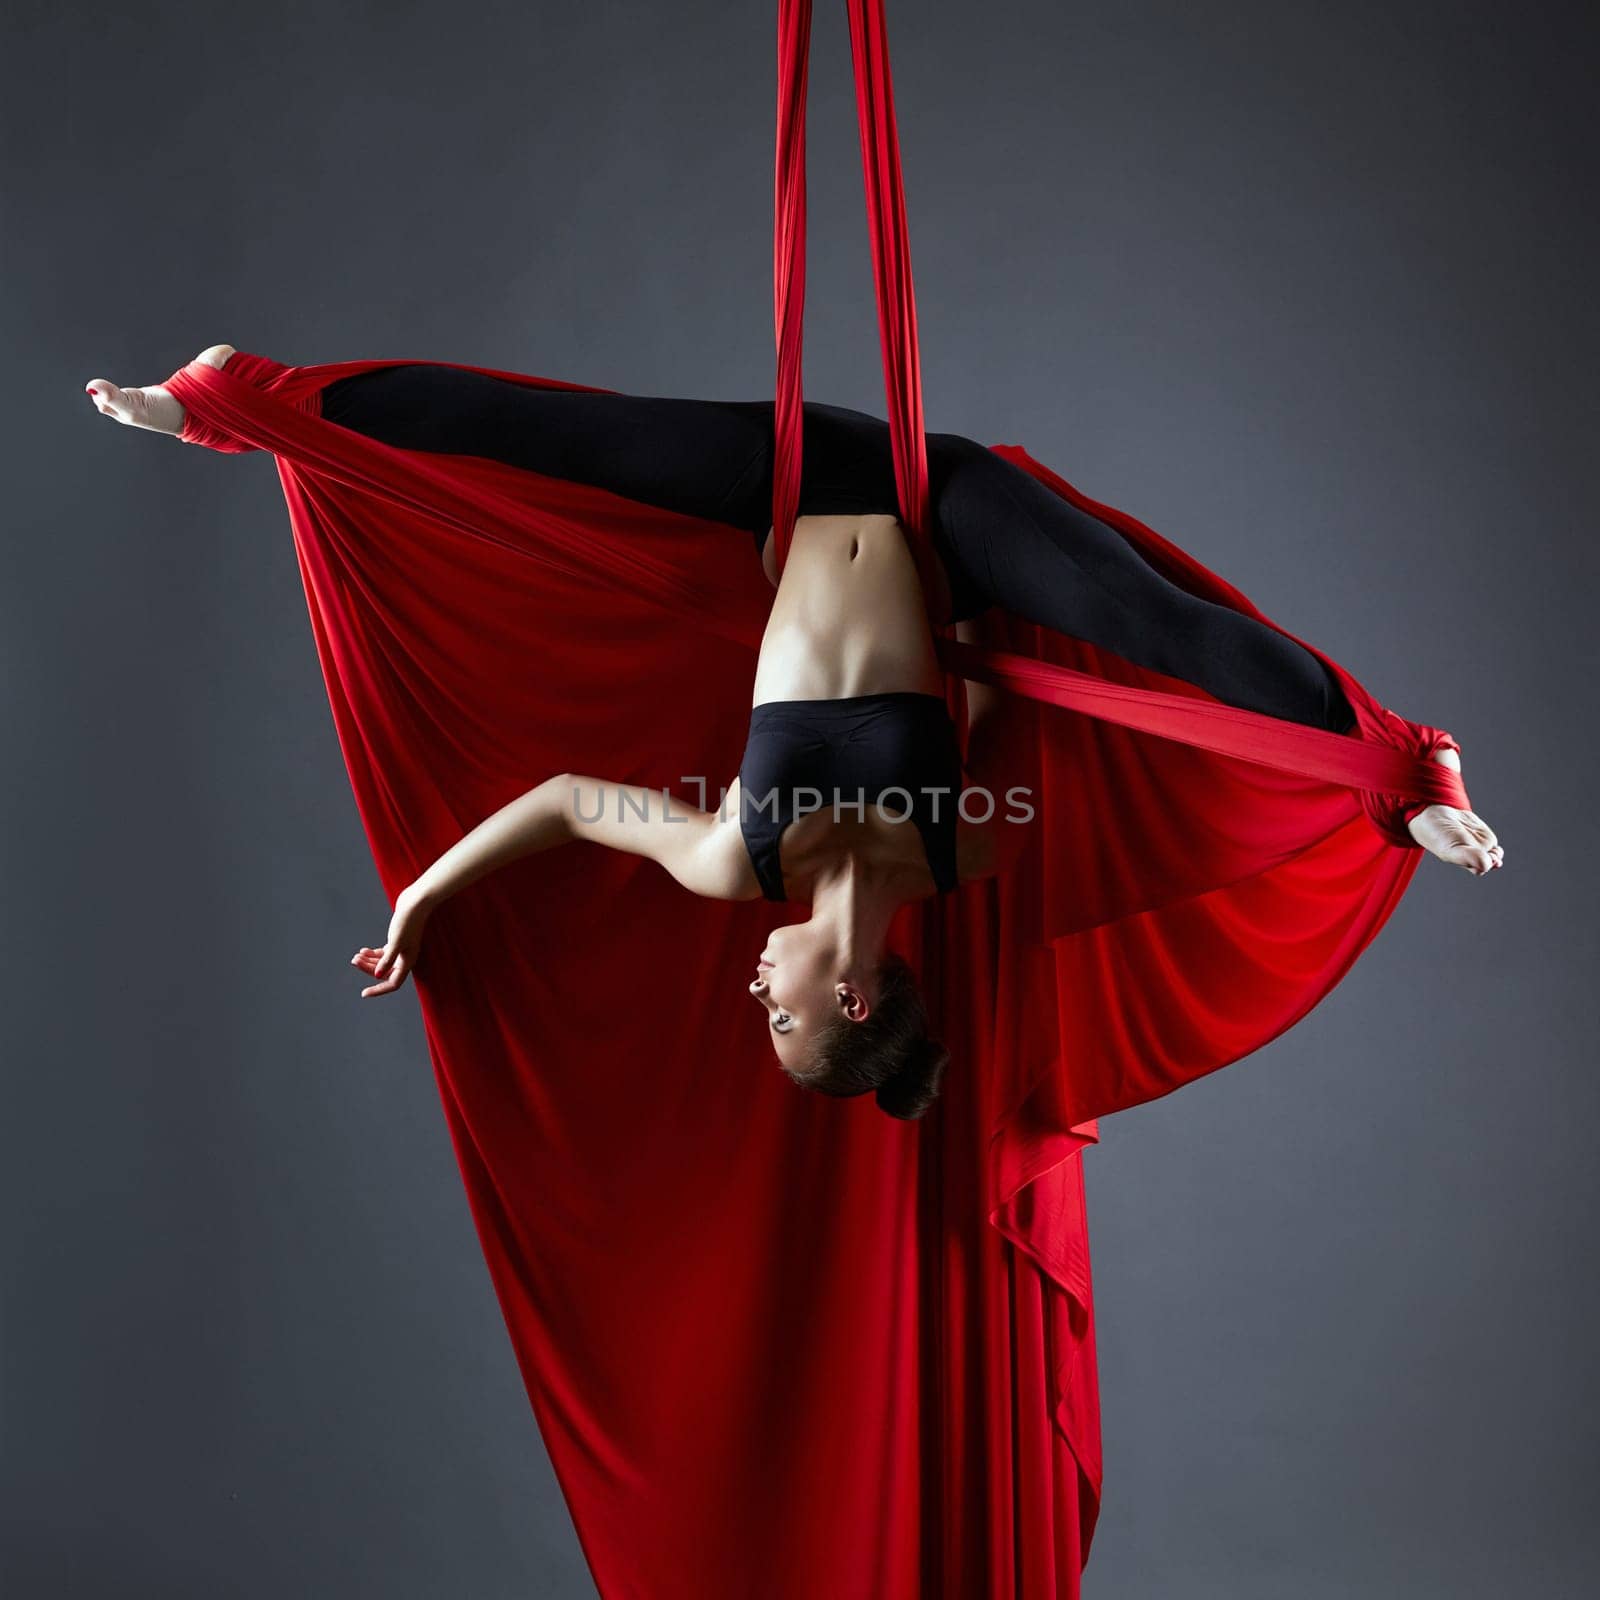 Image of graceful dancer on aerial silks posing upside down